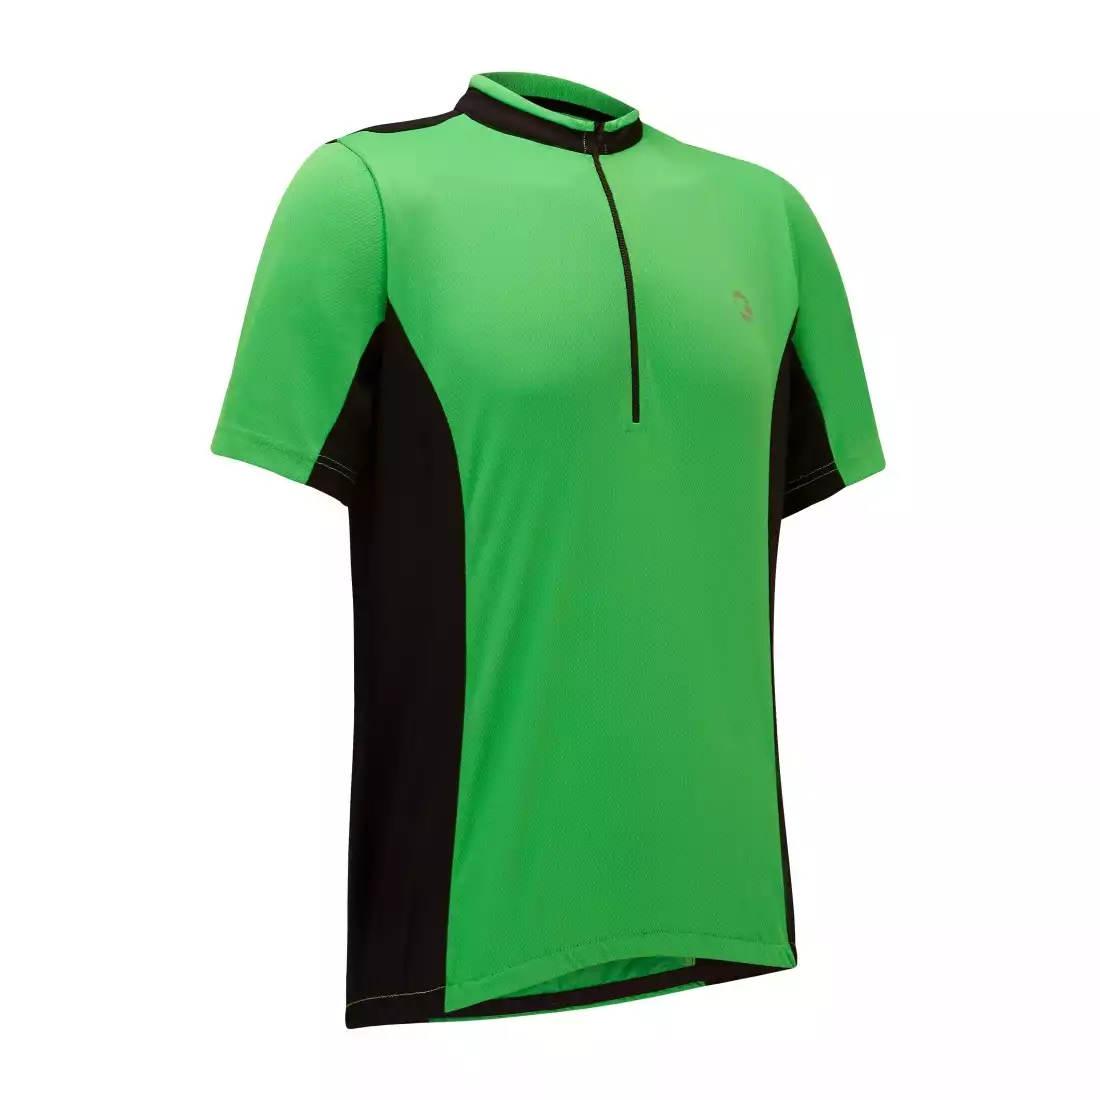 TENN OUTDOORS COOLFLO męska koszulka rowerowa zielono-czarna